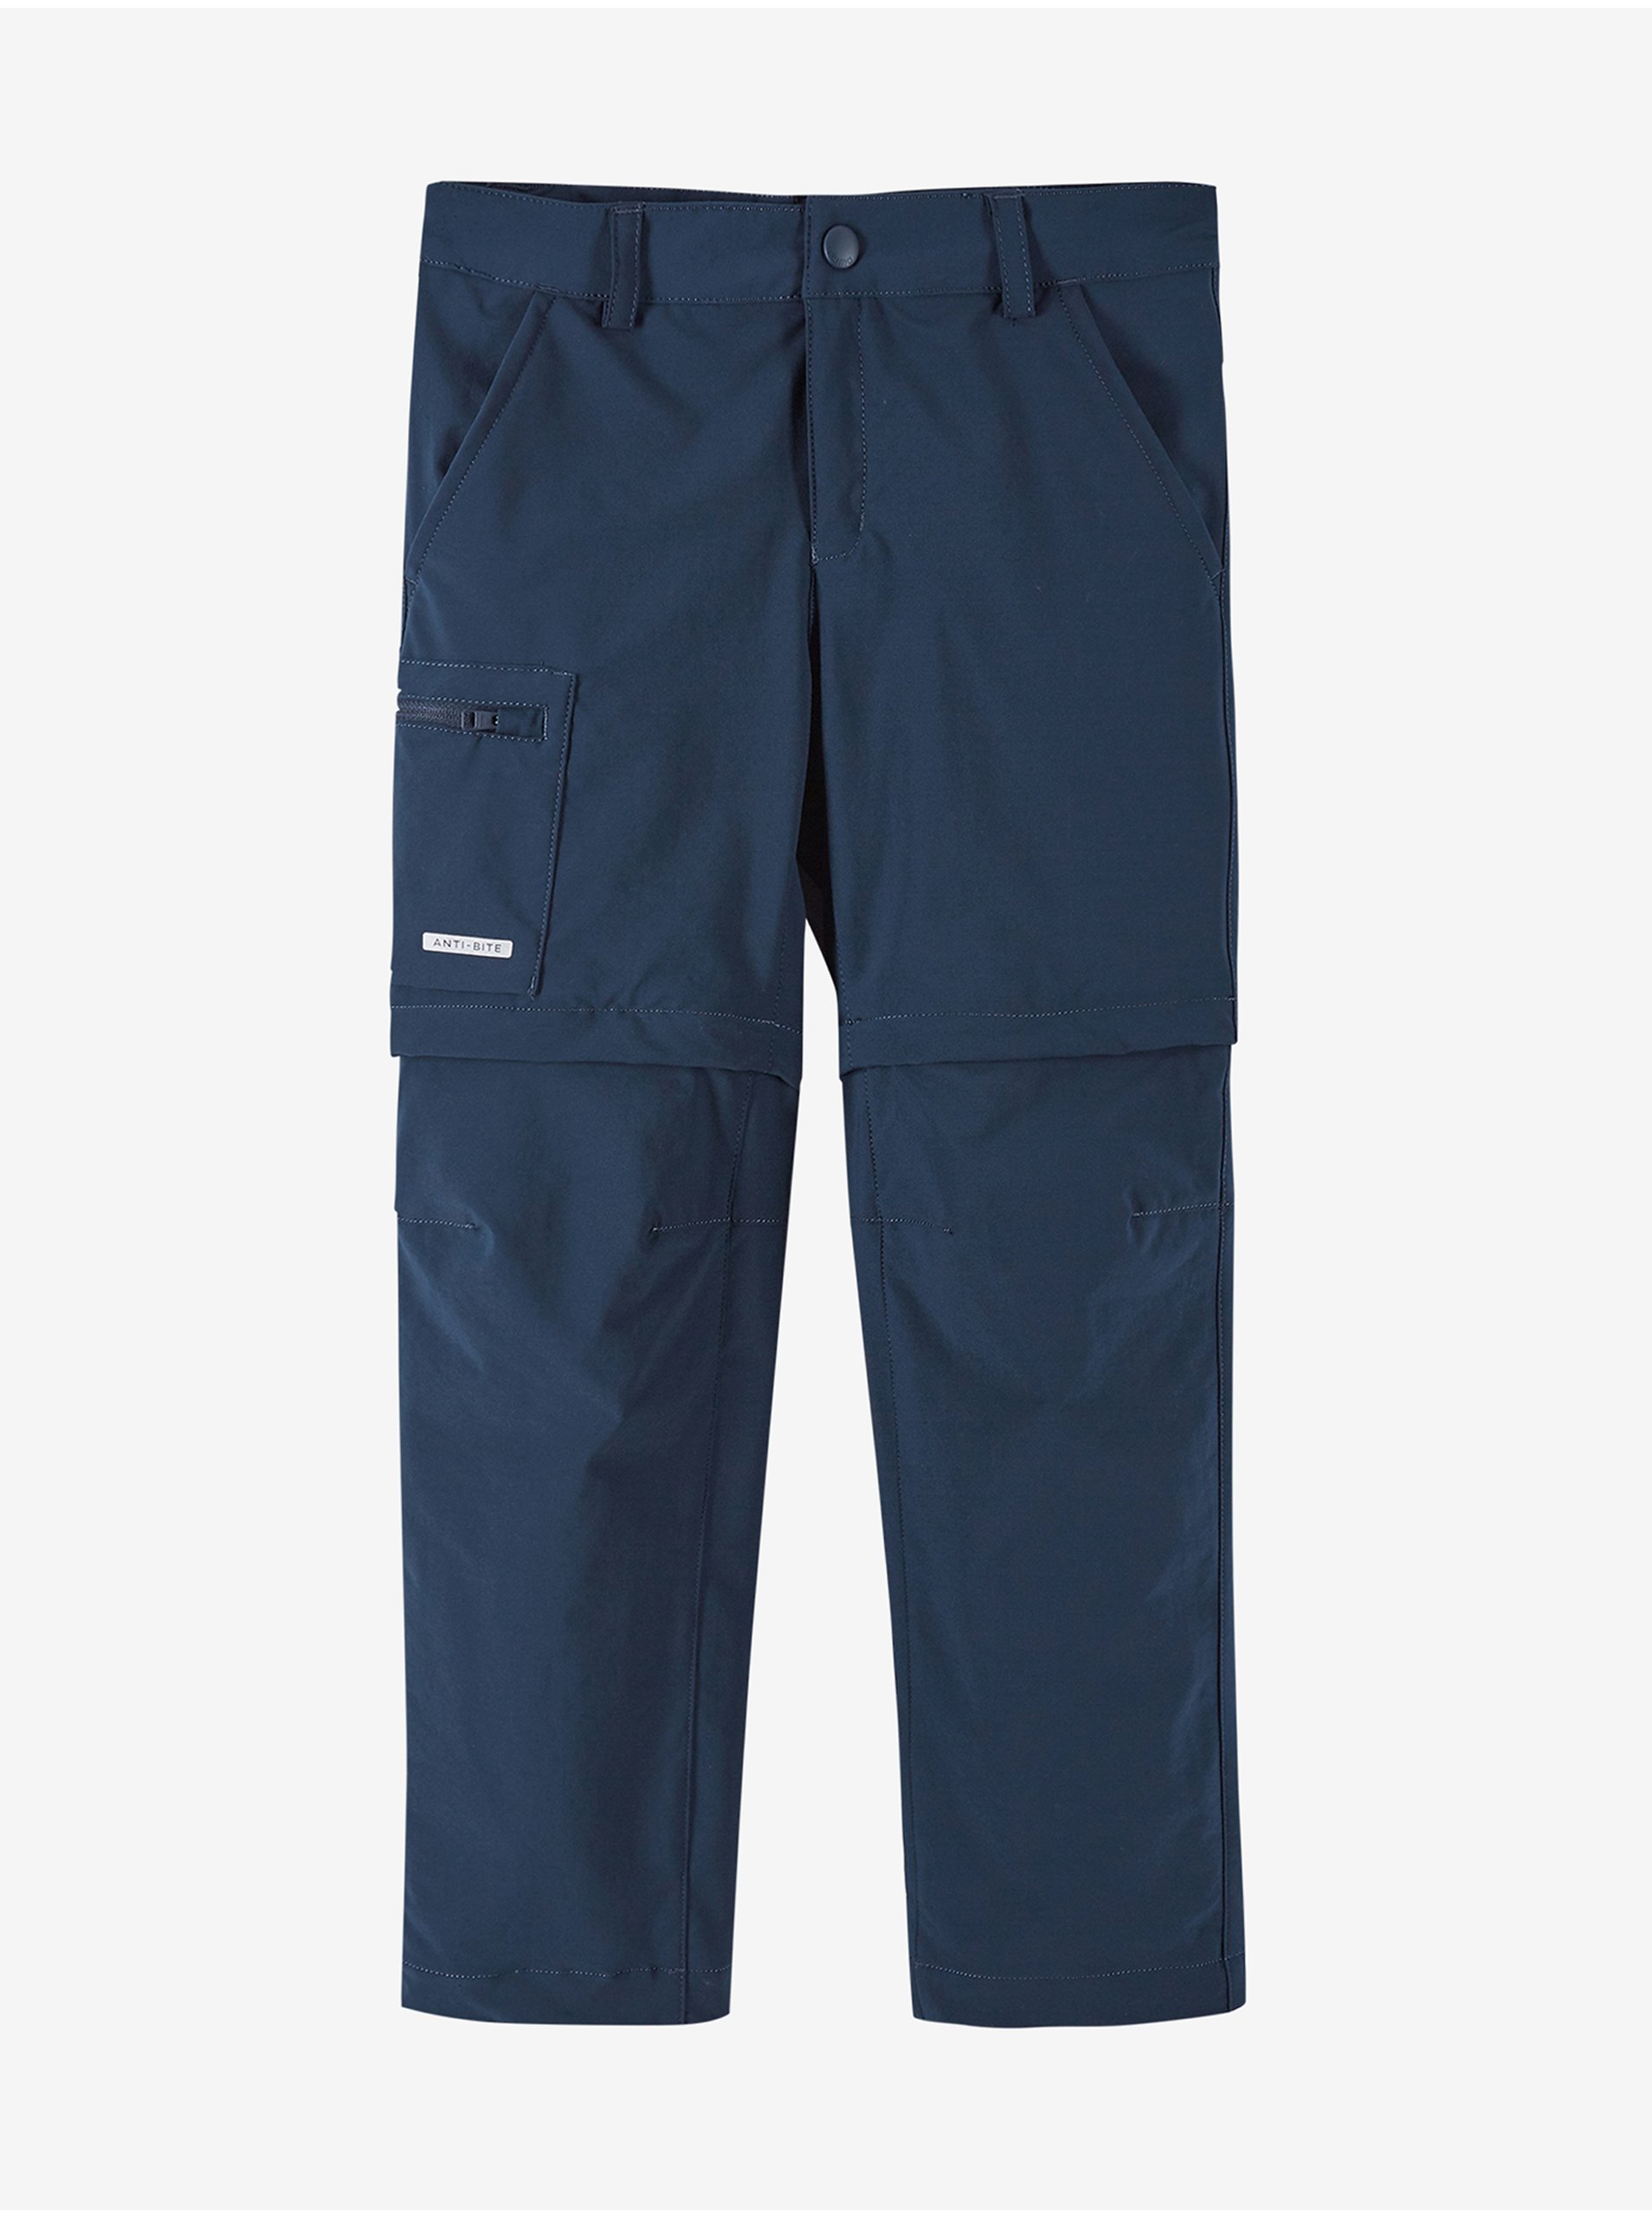 E-shop Tmavě modré dětské kalhoty s odepínacími nohavicemi Reima Sillat